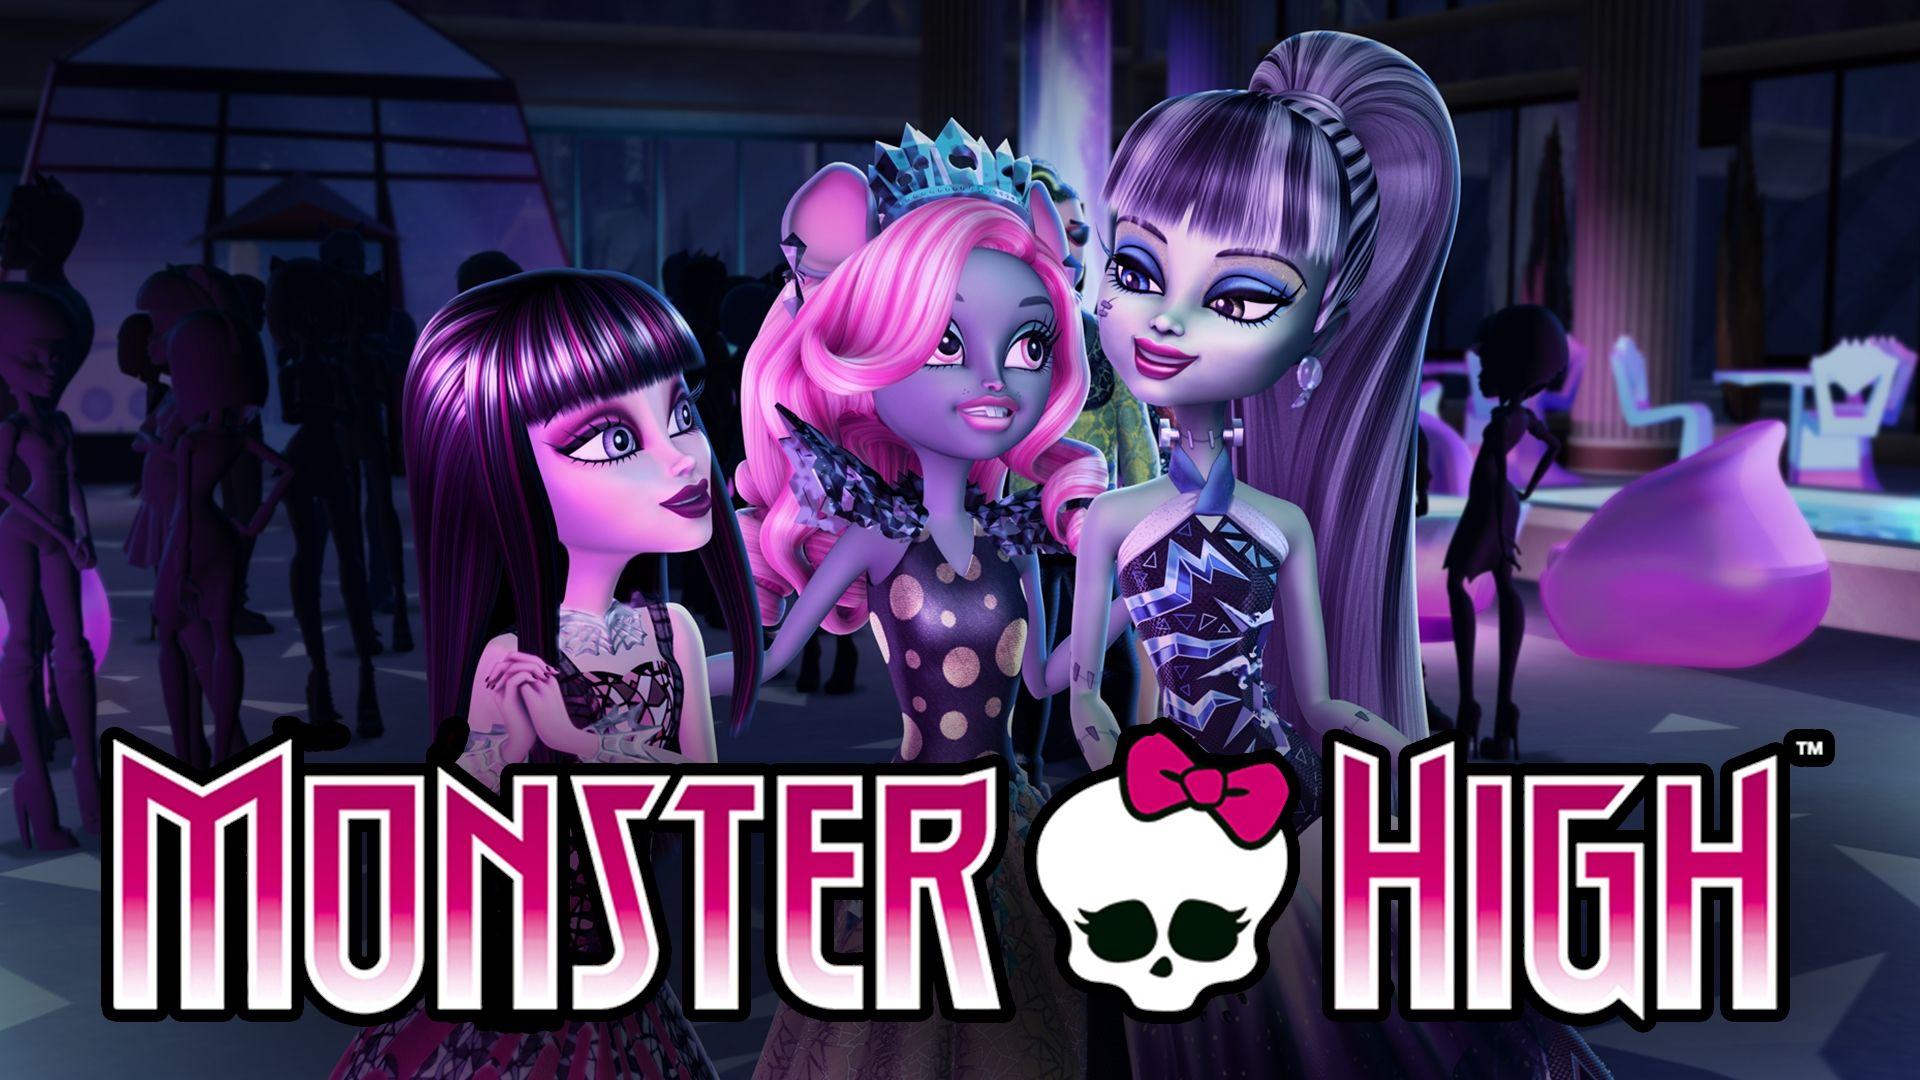 HD wallpaper TV Show Monster High Doll Emo Fantasy Girl Gothic  Mattel  Wallpaper Flare